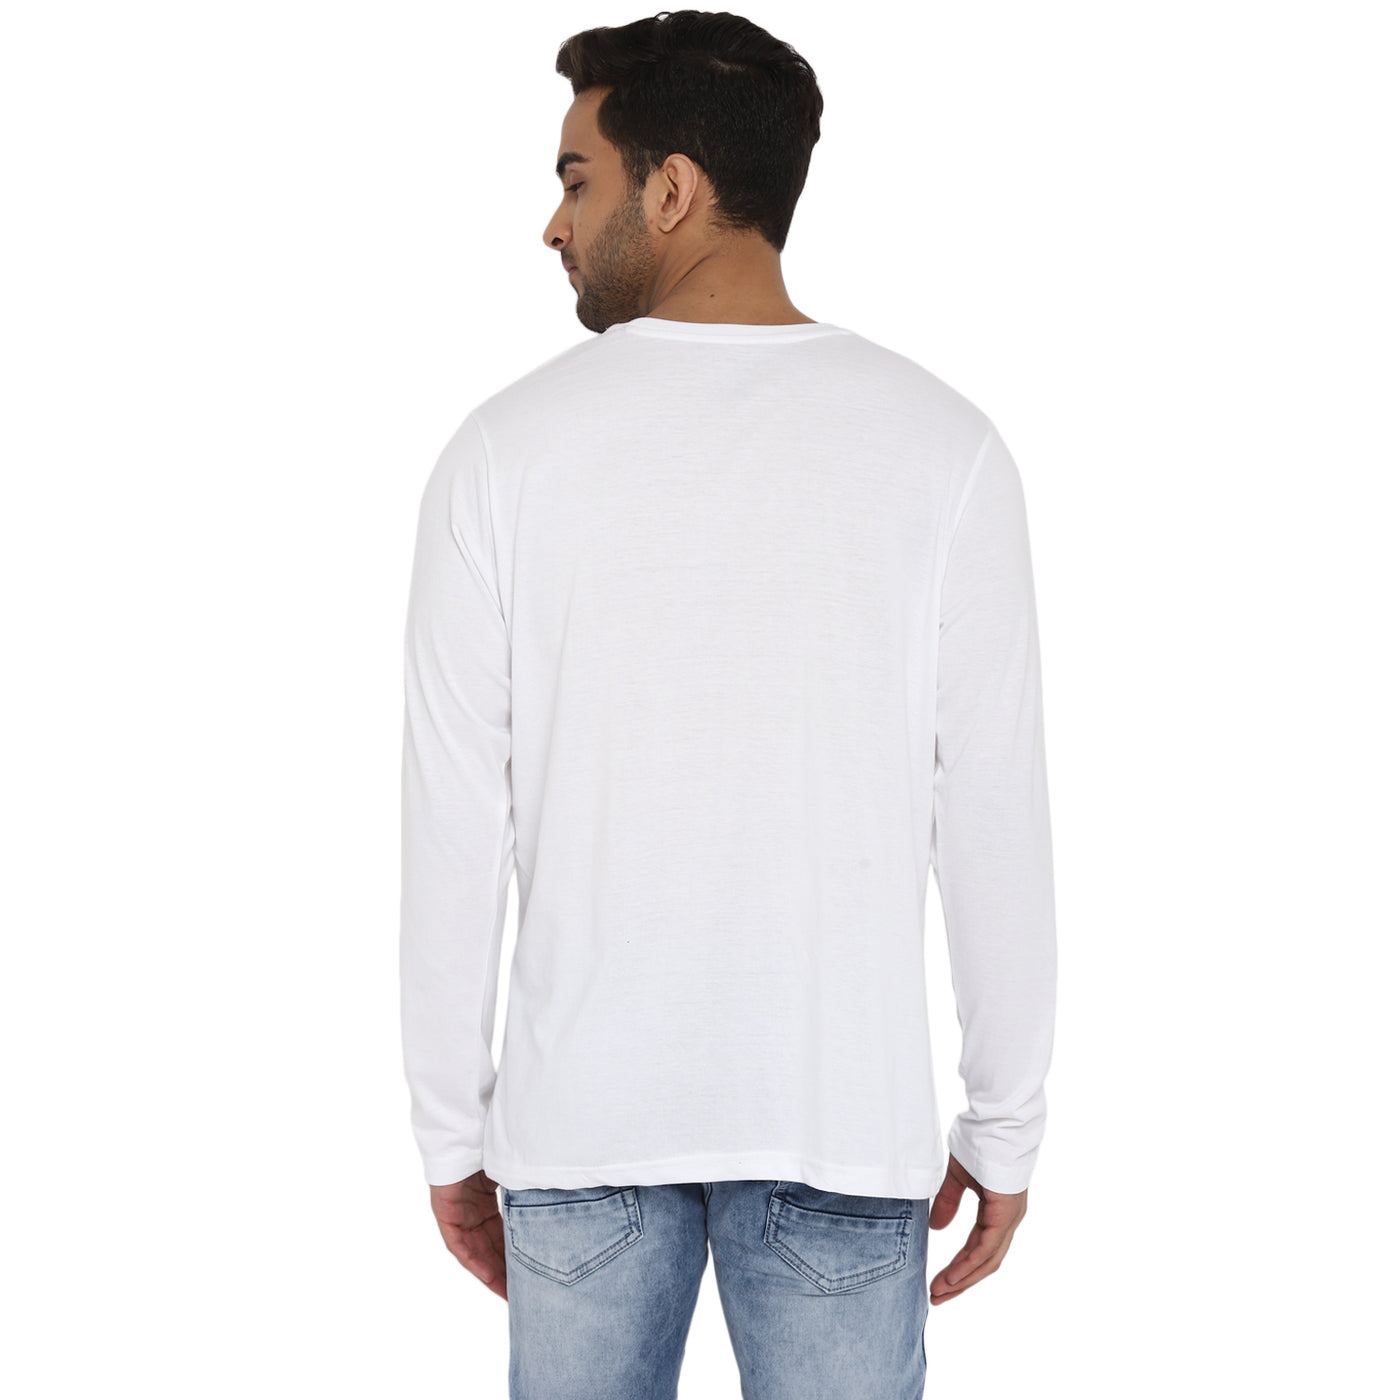 Essentials White Solid Round Neck T-Shirt